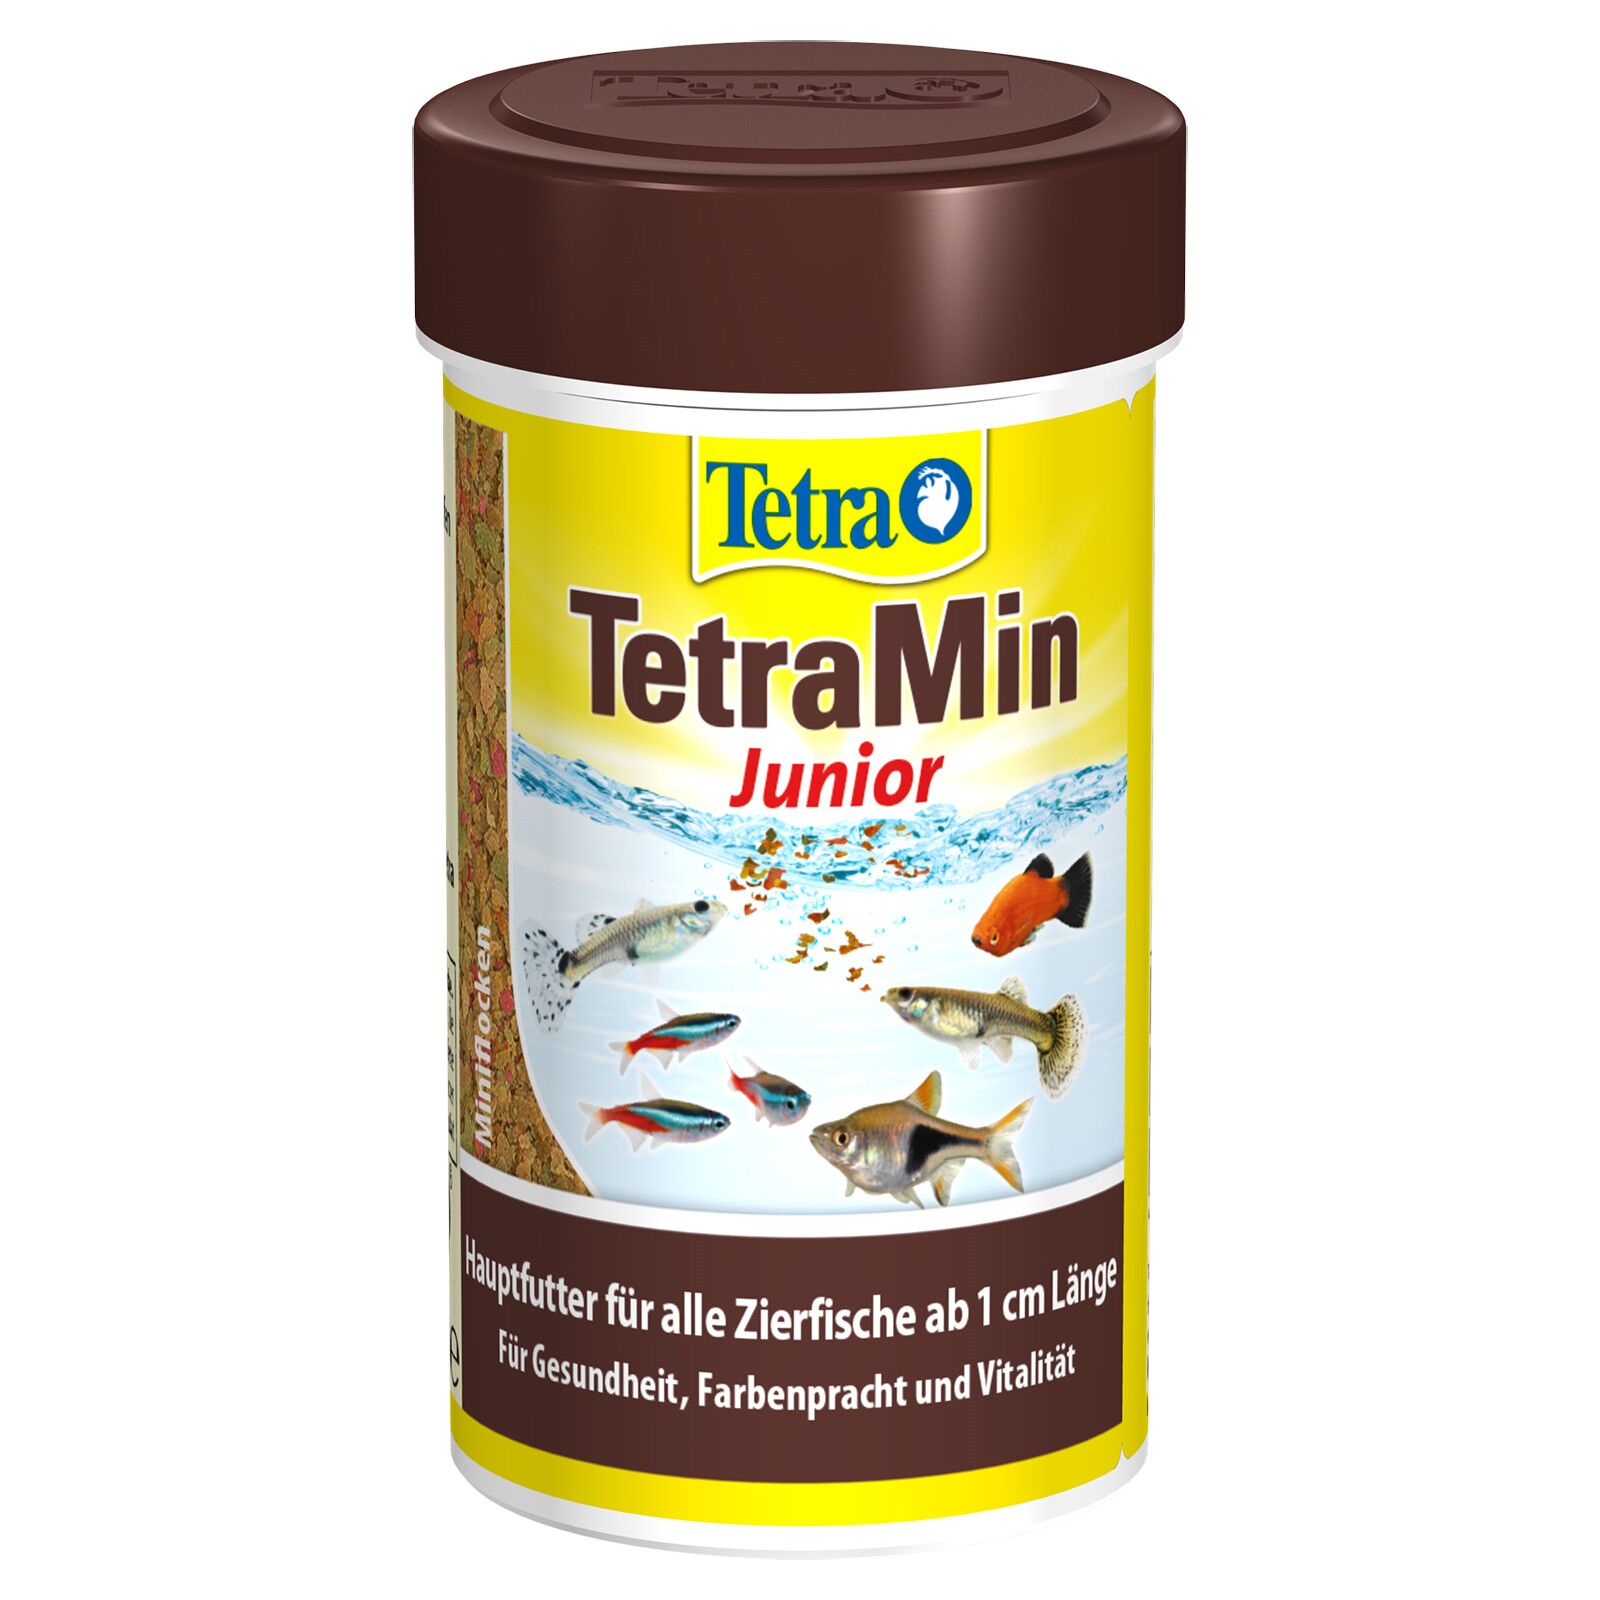 Tetra TetraMin Tropical Granules 100g - The Tech Den